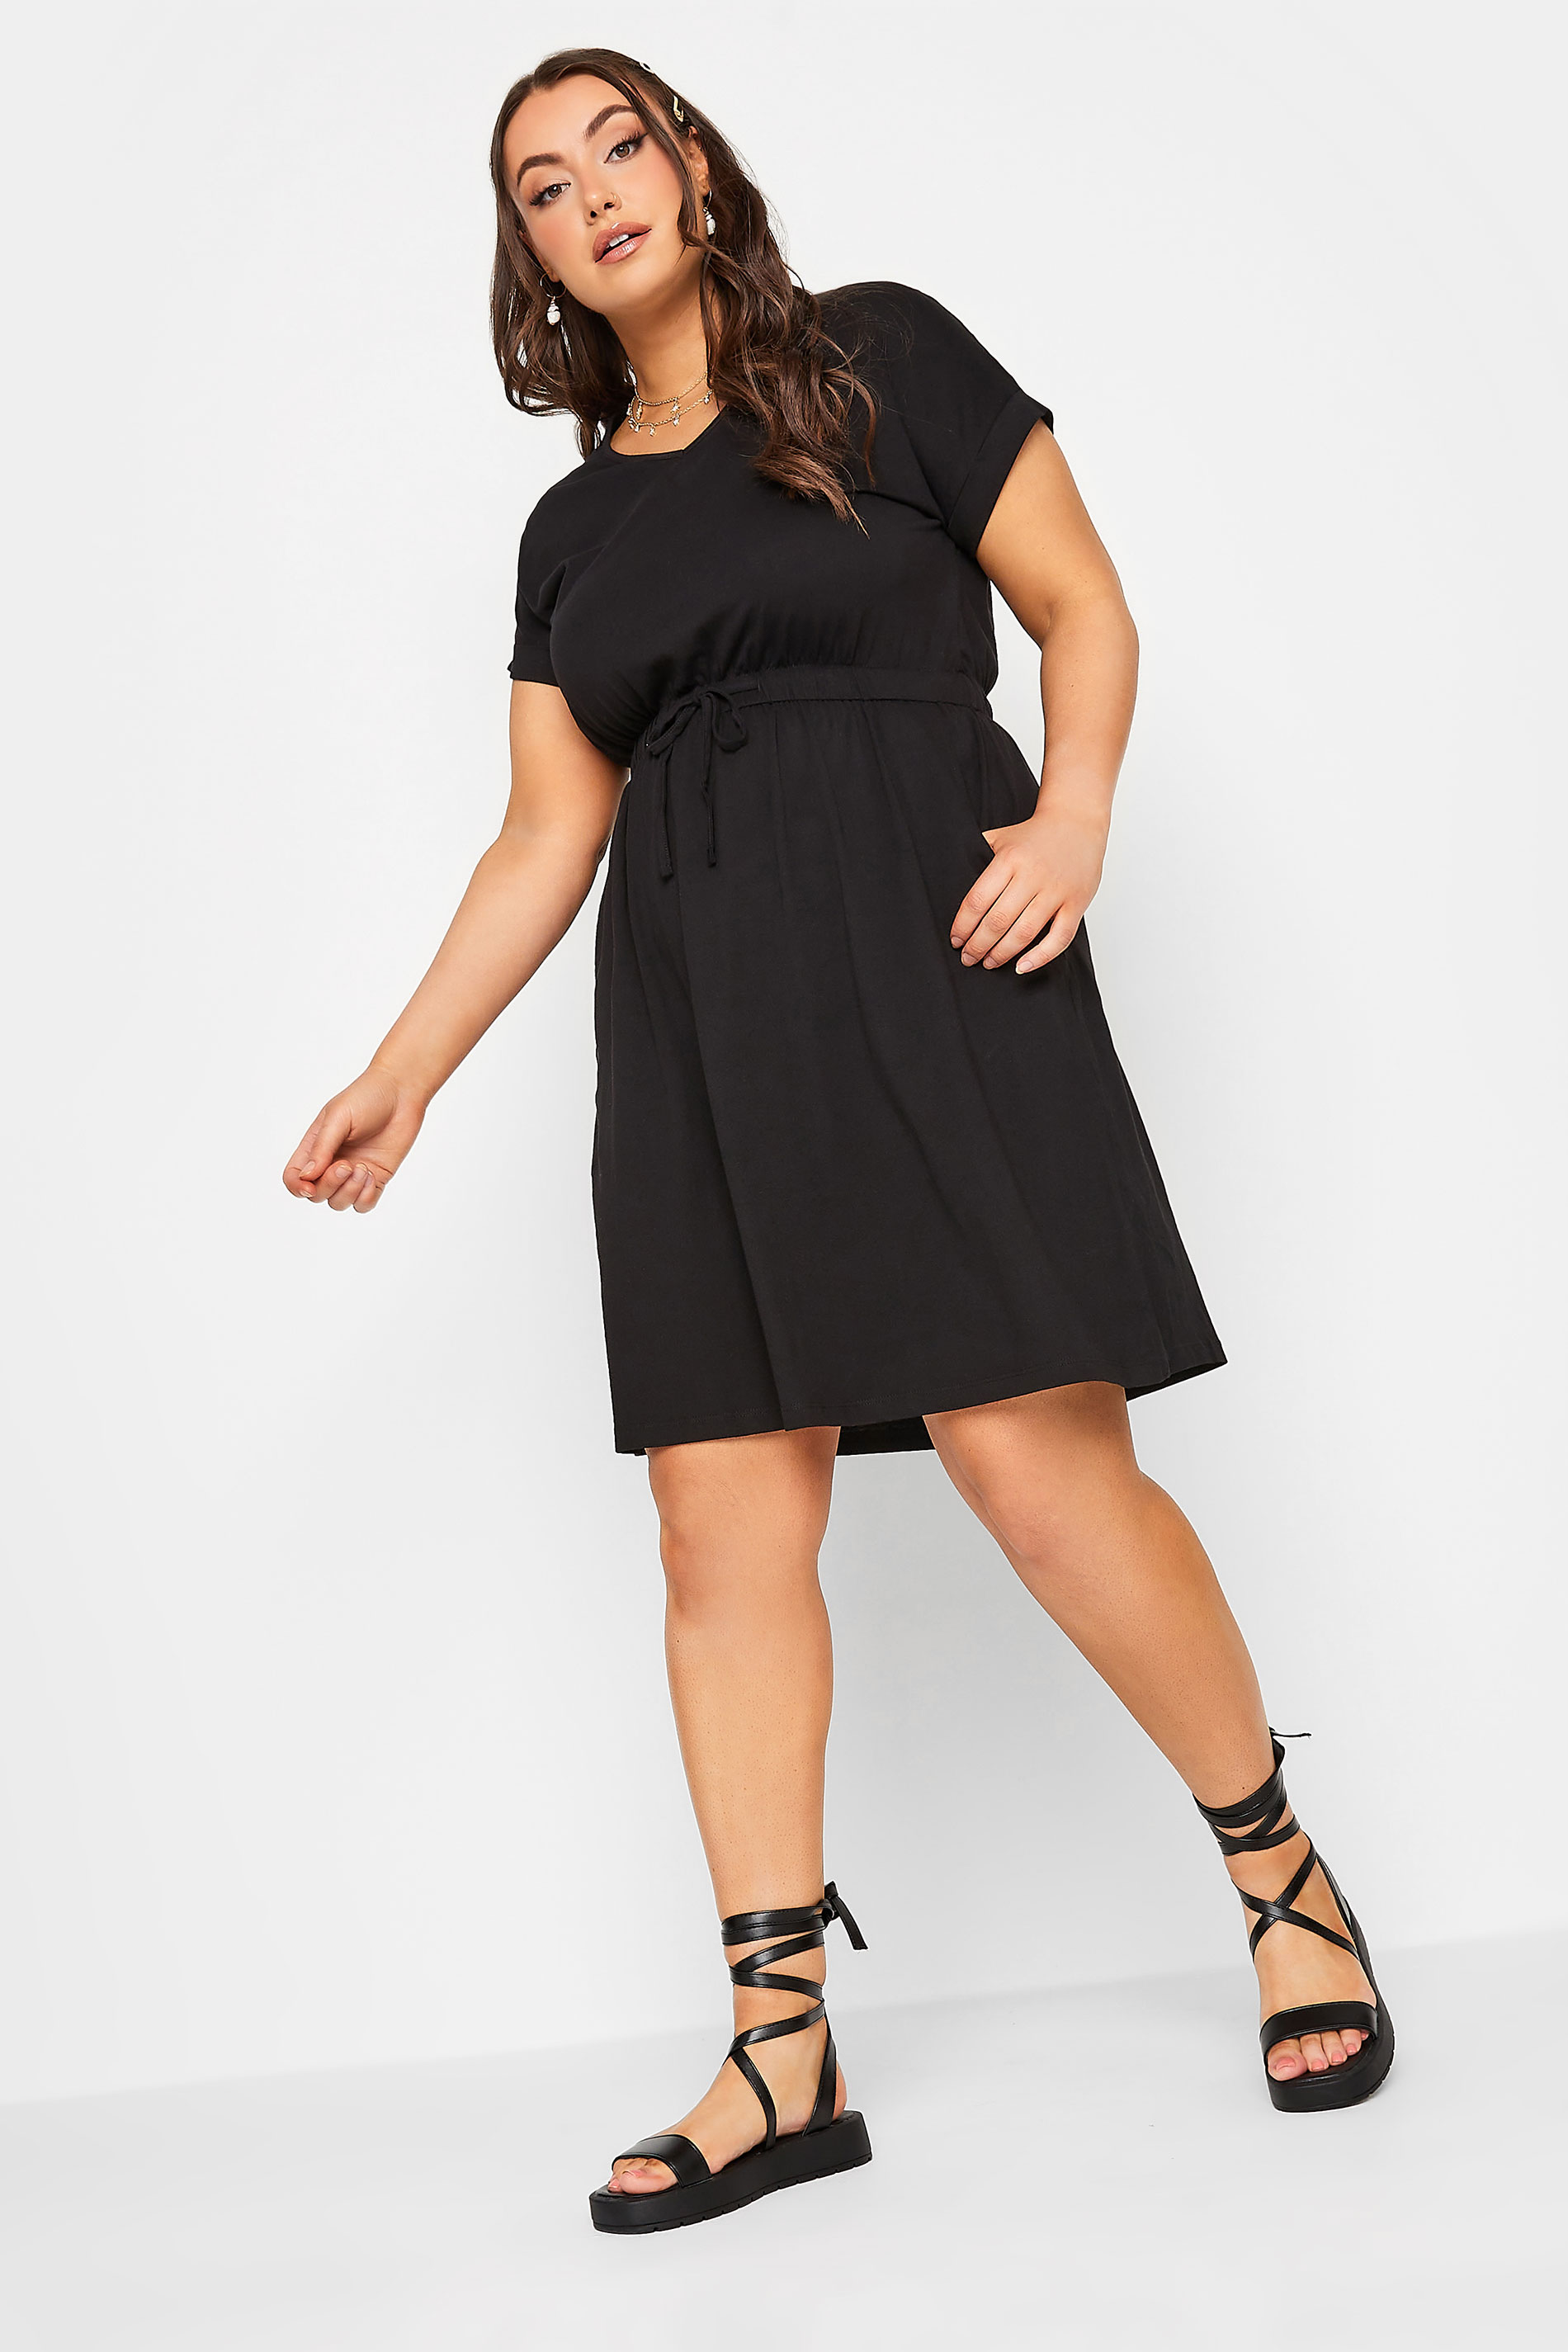 Plus Size Black Cotton T-Shirt Dress | Yours Clothing  3